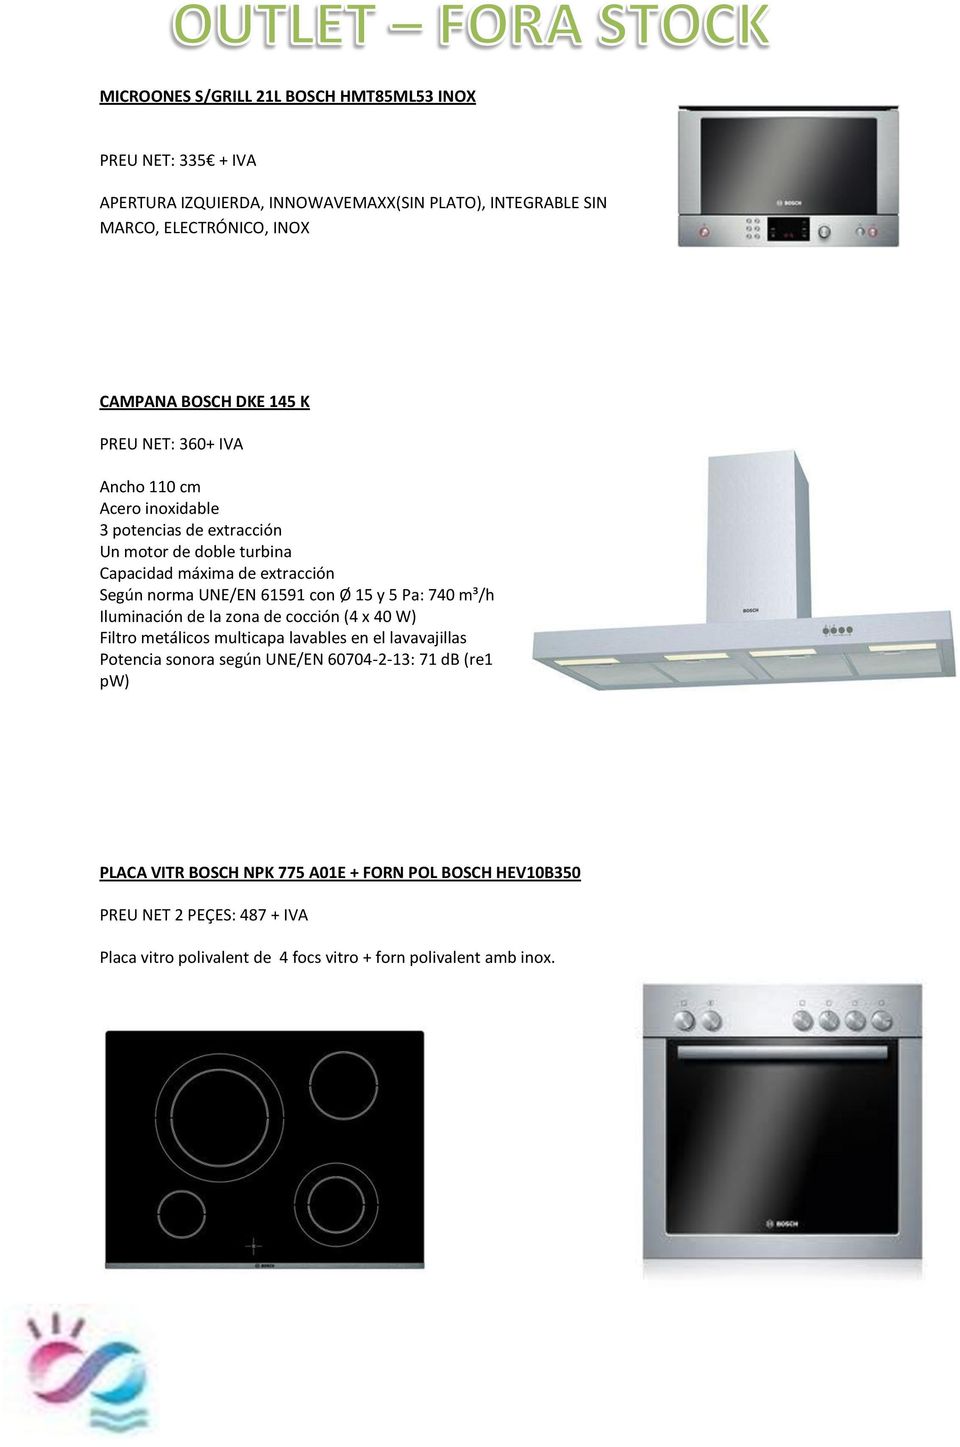 con Ø 15 y 5 Pa: 740 m³/h Iluminación de la zona de cocción (4 x 40 W) Filtro metálicos multicapa lavables en el lavavajillas Potencia sonora según UNE/EN